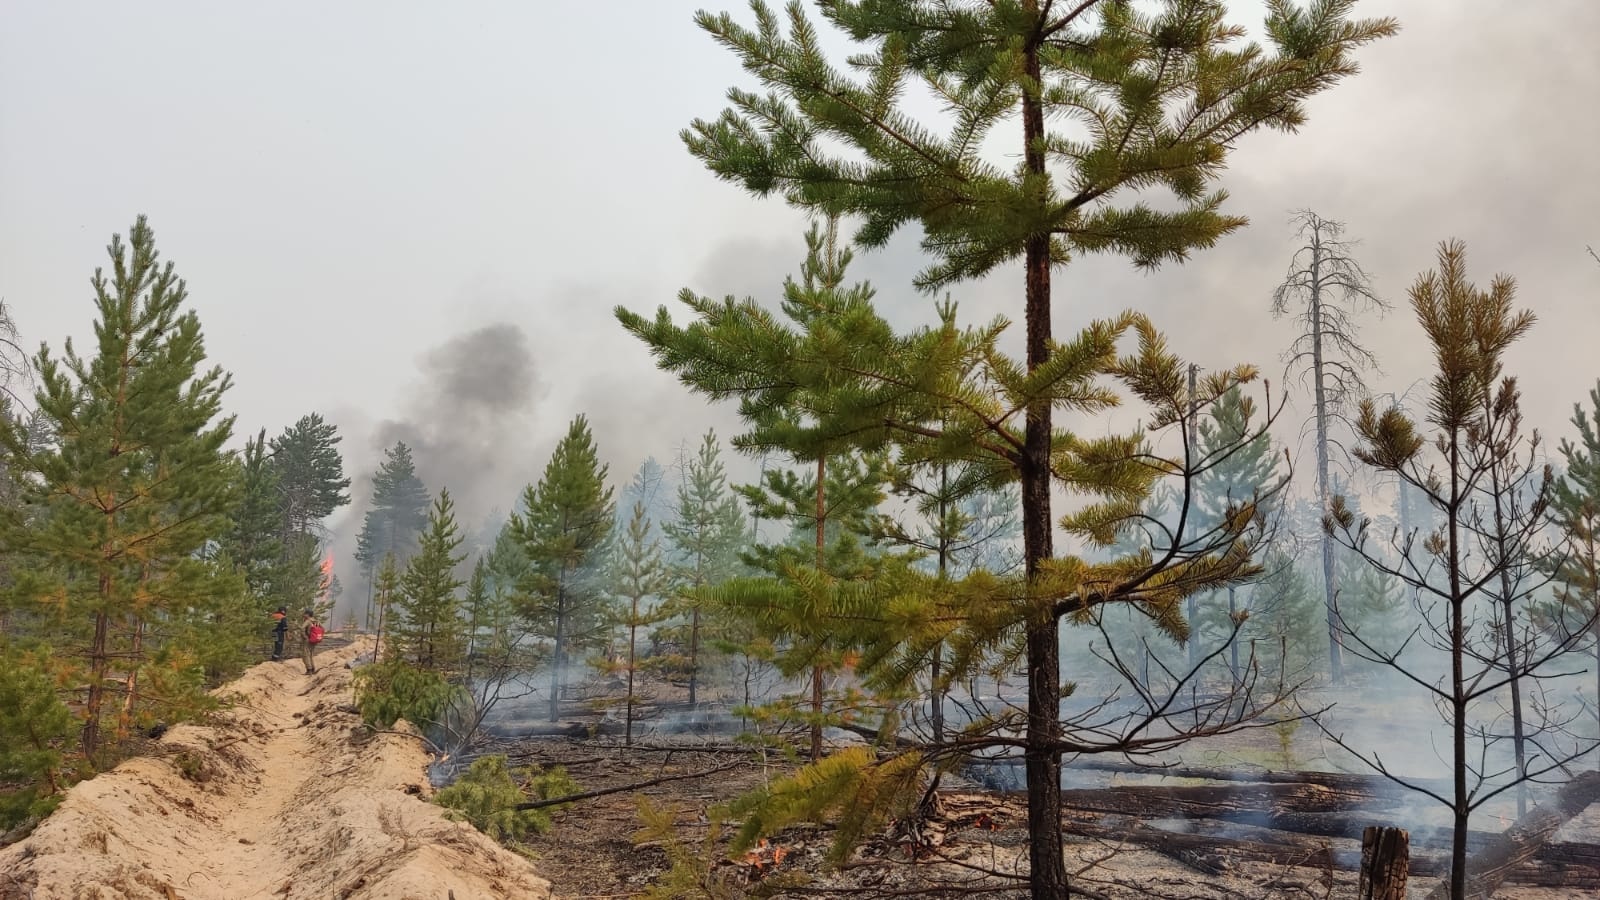 Автоколонну направят на тушение лесных пожаров в Горном районе Якутии